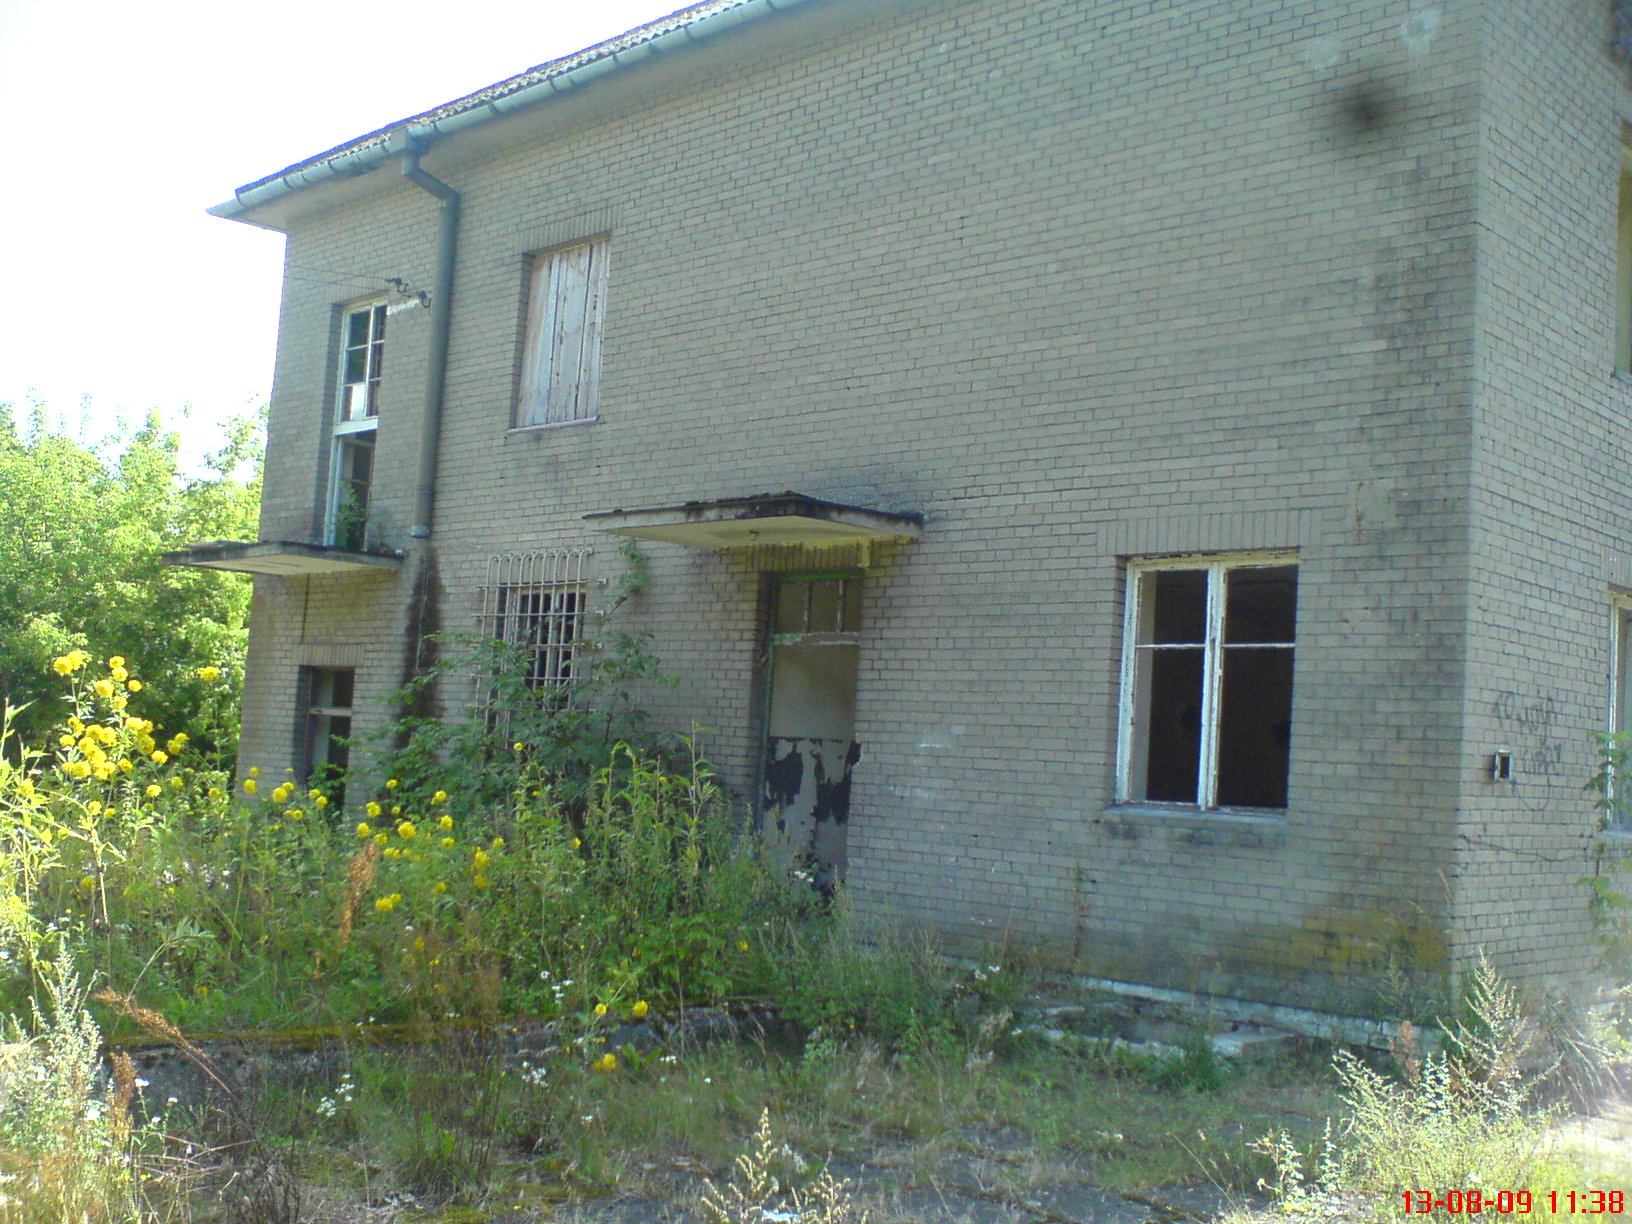 Stacja Szczutowo, widok z boku, 13.08.2009 r.